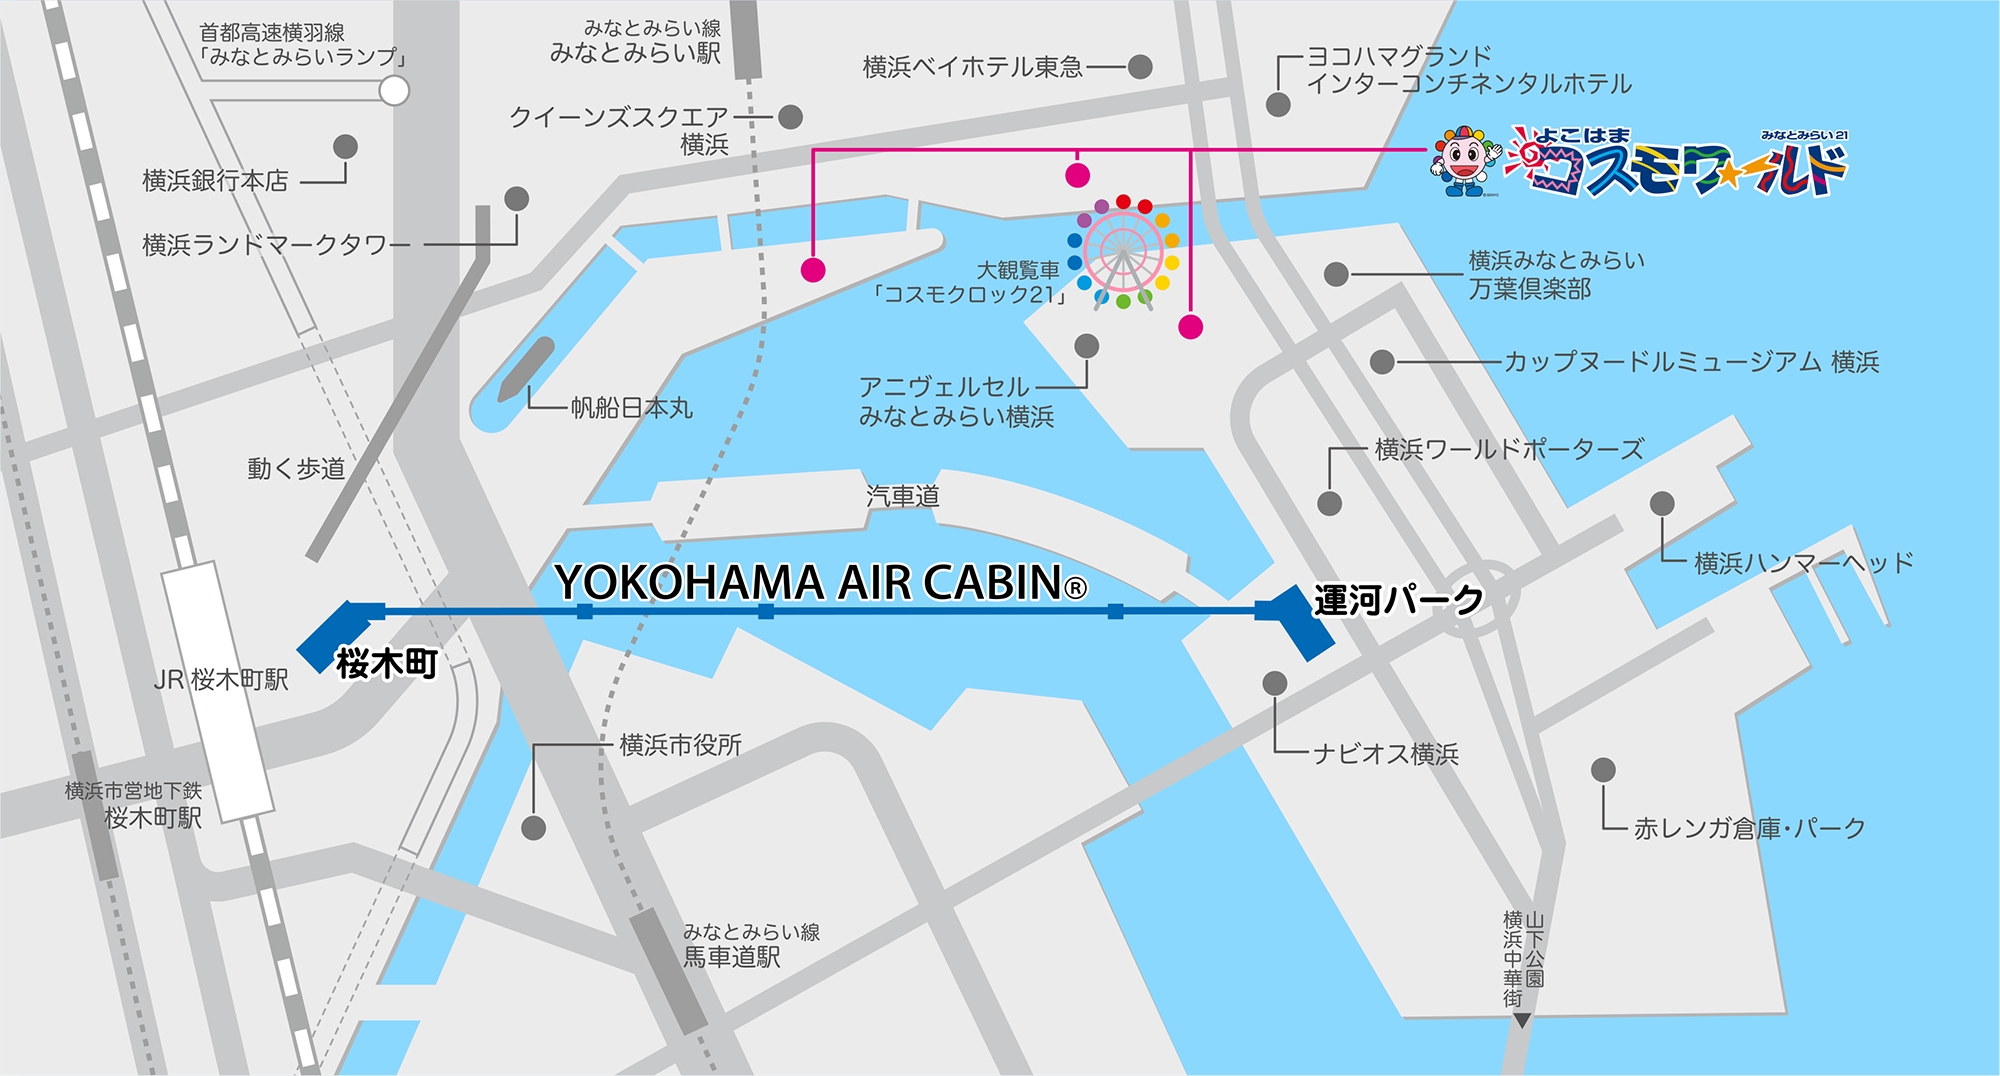 ☆【橫濱景點】新開幕！橫濱空中纜車YOKOHAMA AIR CABIN。皮卡丘人孔蓋也收集一波